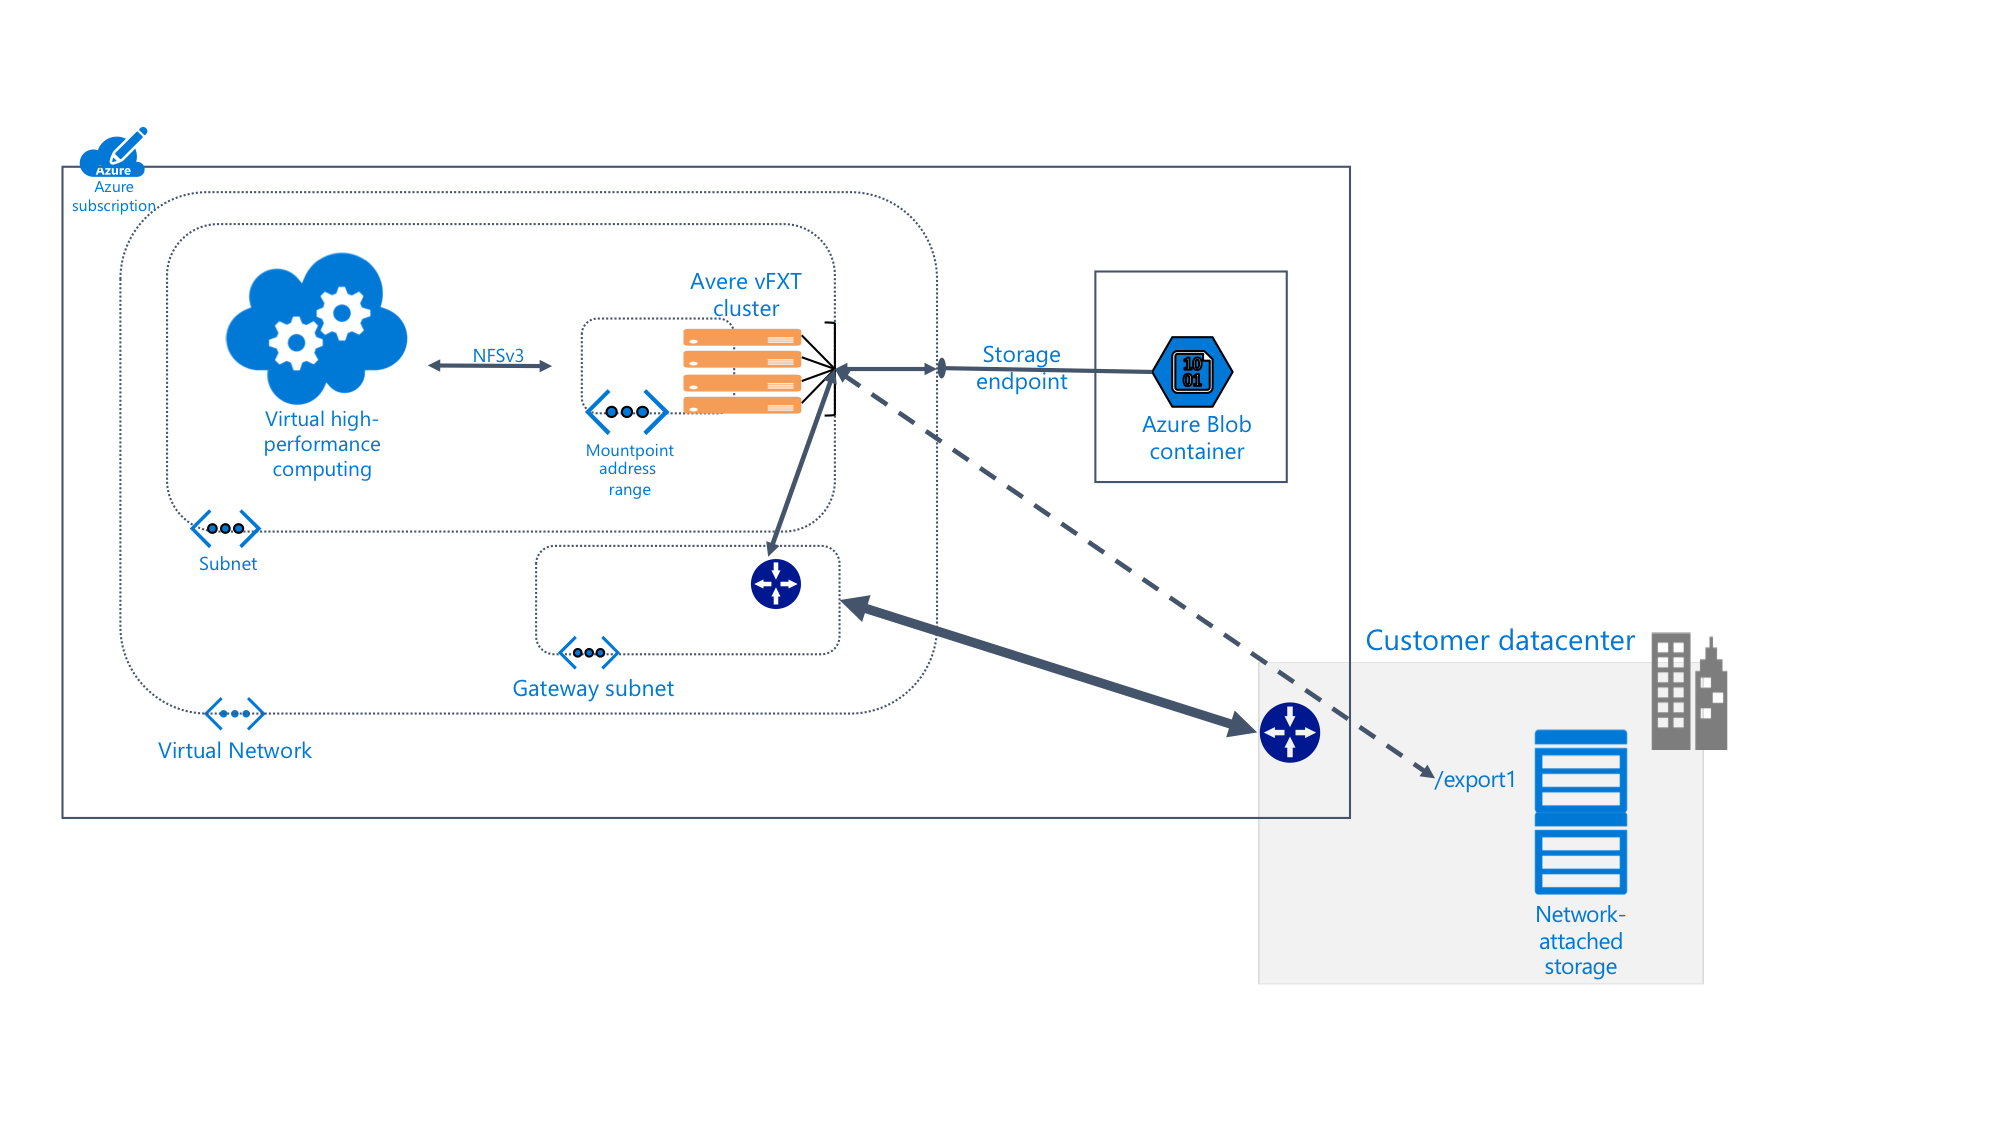 diagram przedstawiający szczegółowe informacje o systemie Avere vFXT w ramach subskrypcji platformy Azure podłączonym do magazynu obiektów blob i lokalnego centrum danych